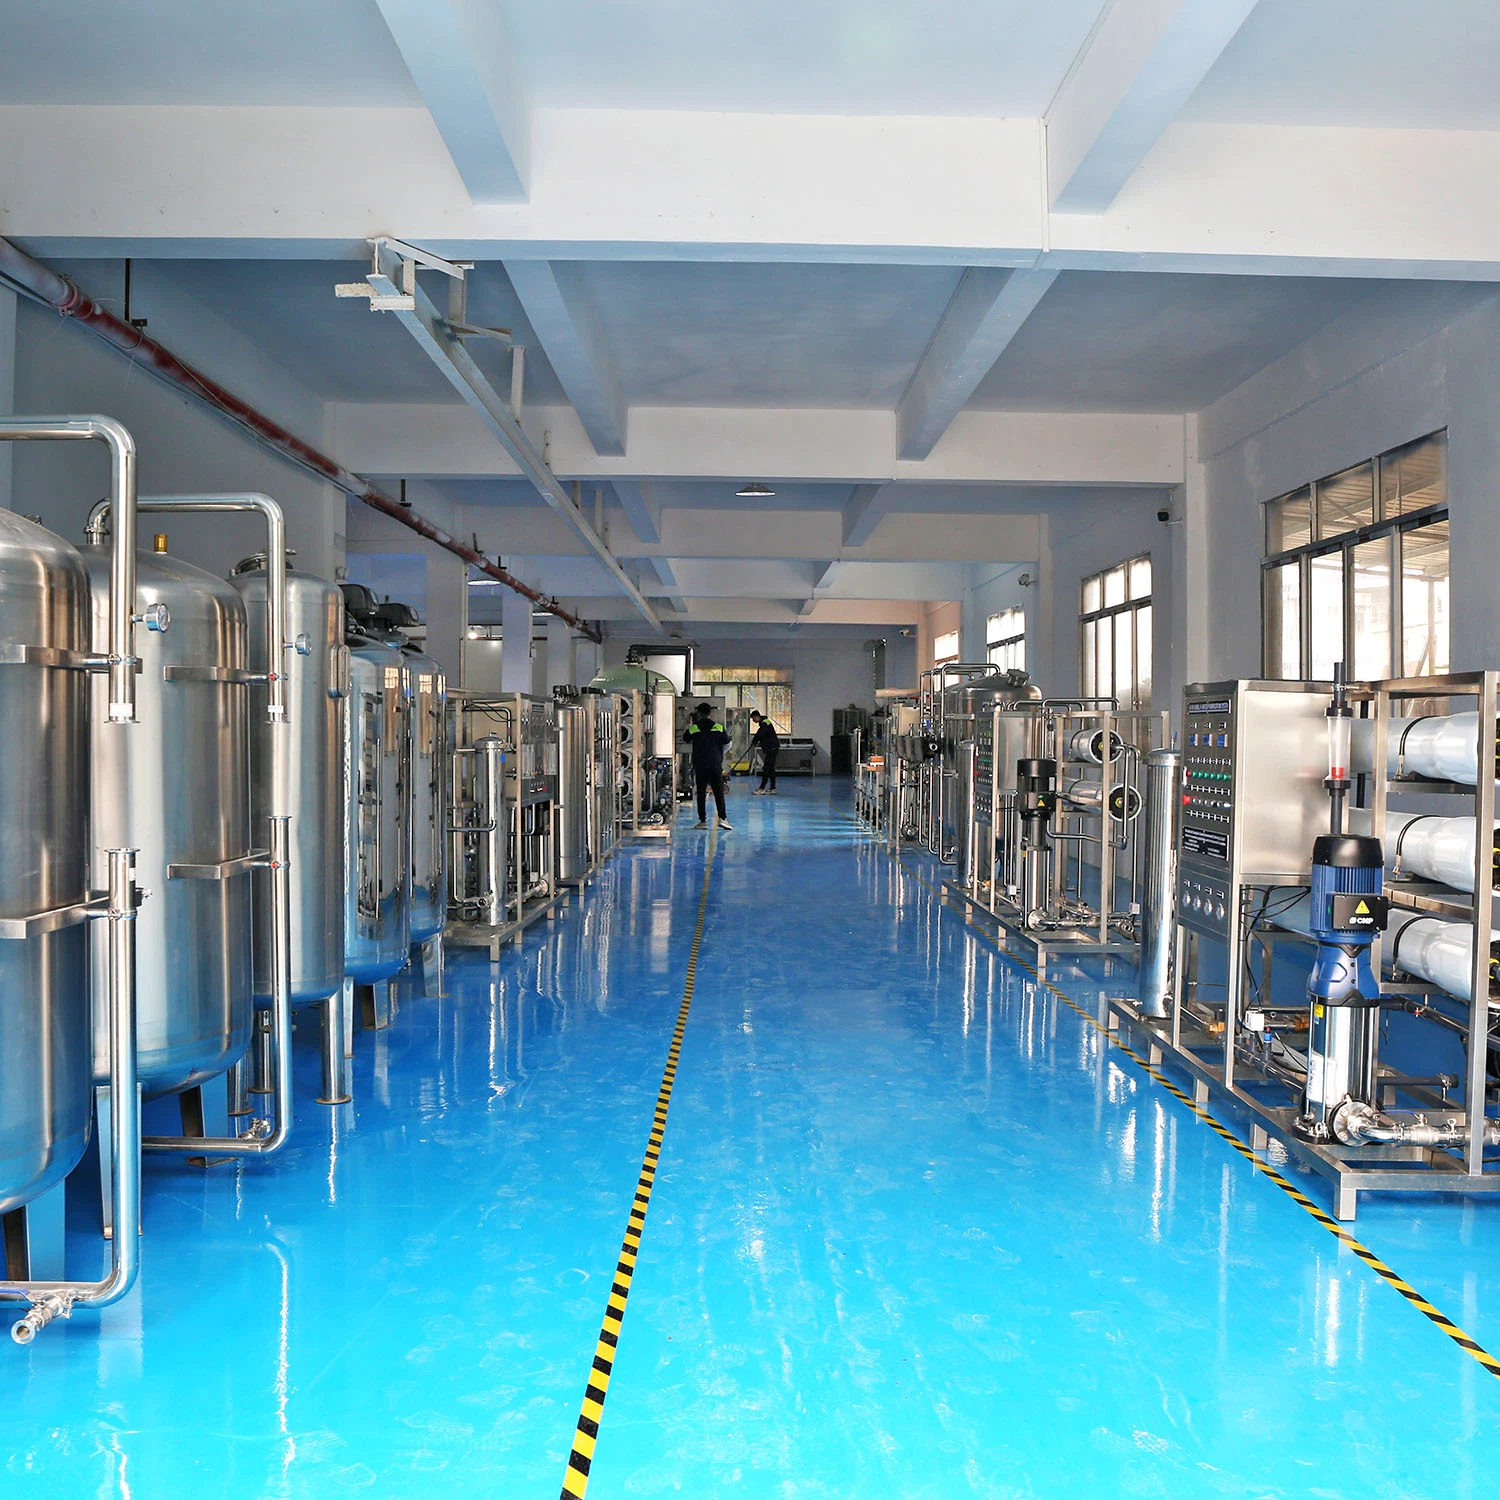 نظام تنقية المياه ونظام تعبئة المياه 6000 لتر في الساعة عند الرجوع للخلف نظم التناضح مصنع تحلية المياه الهندسة الكيميائية الصناعية المياه المعالجة